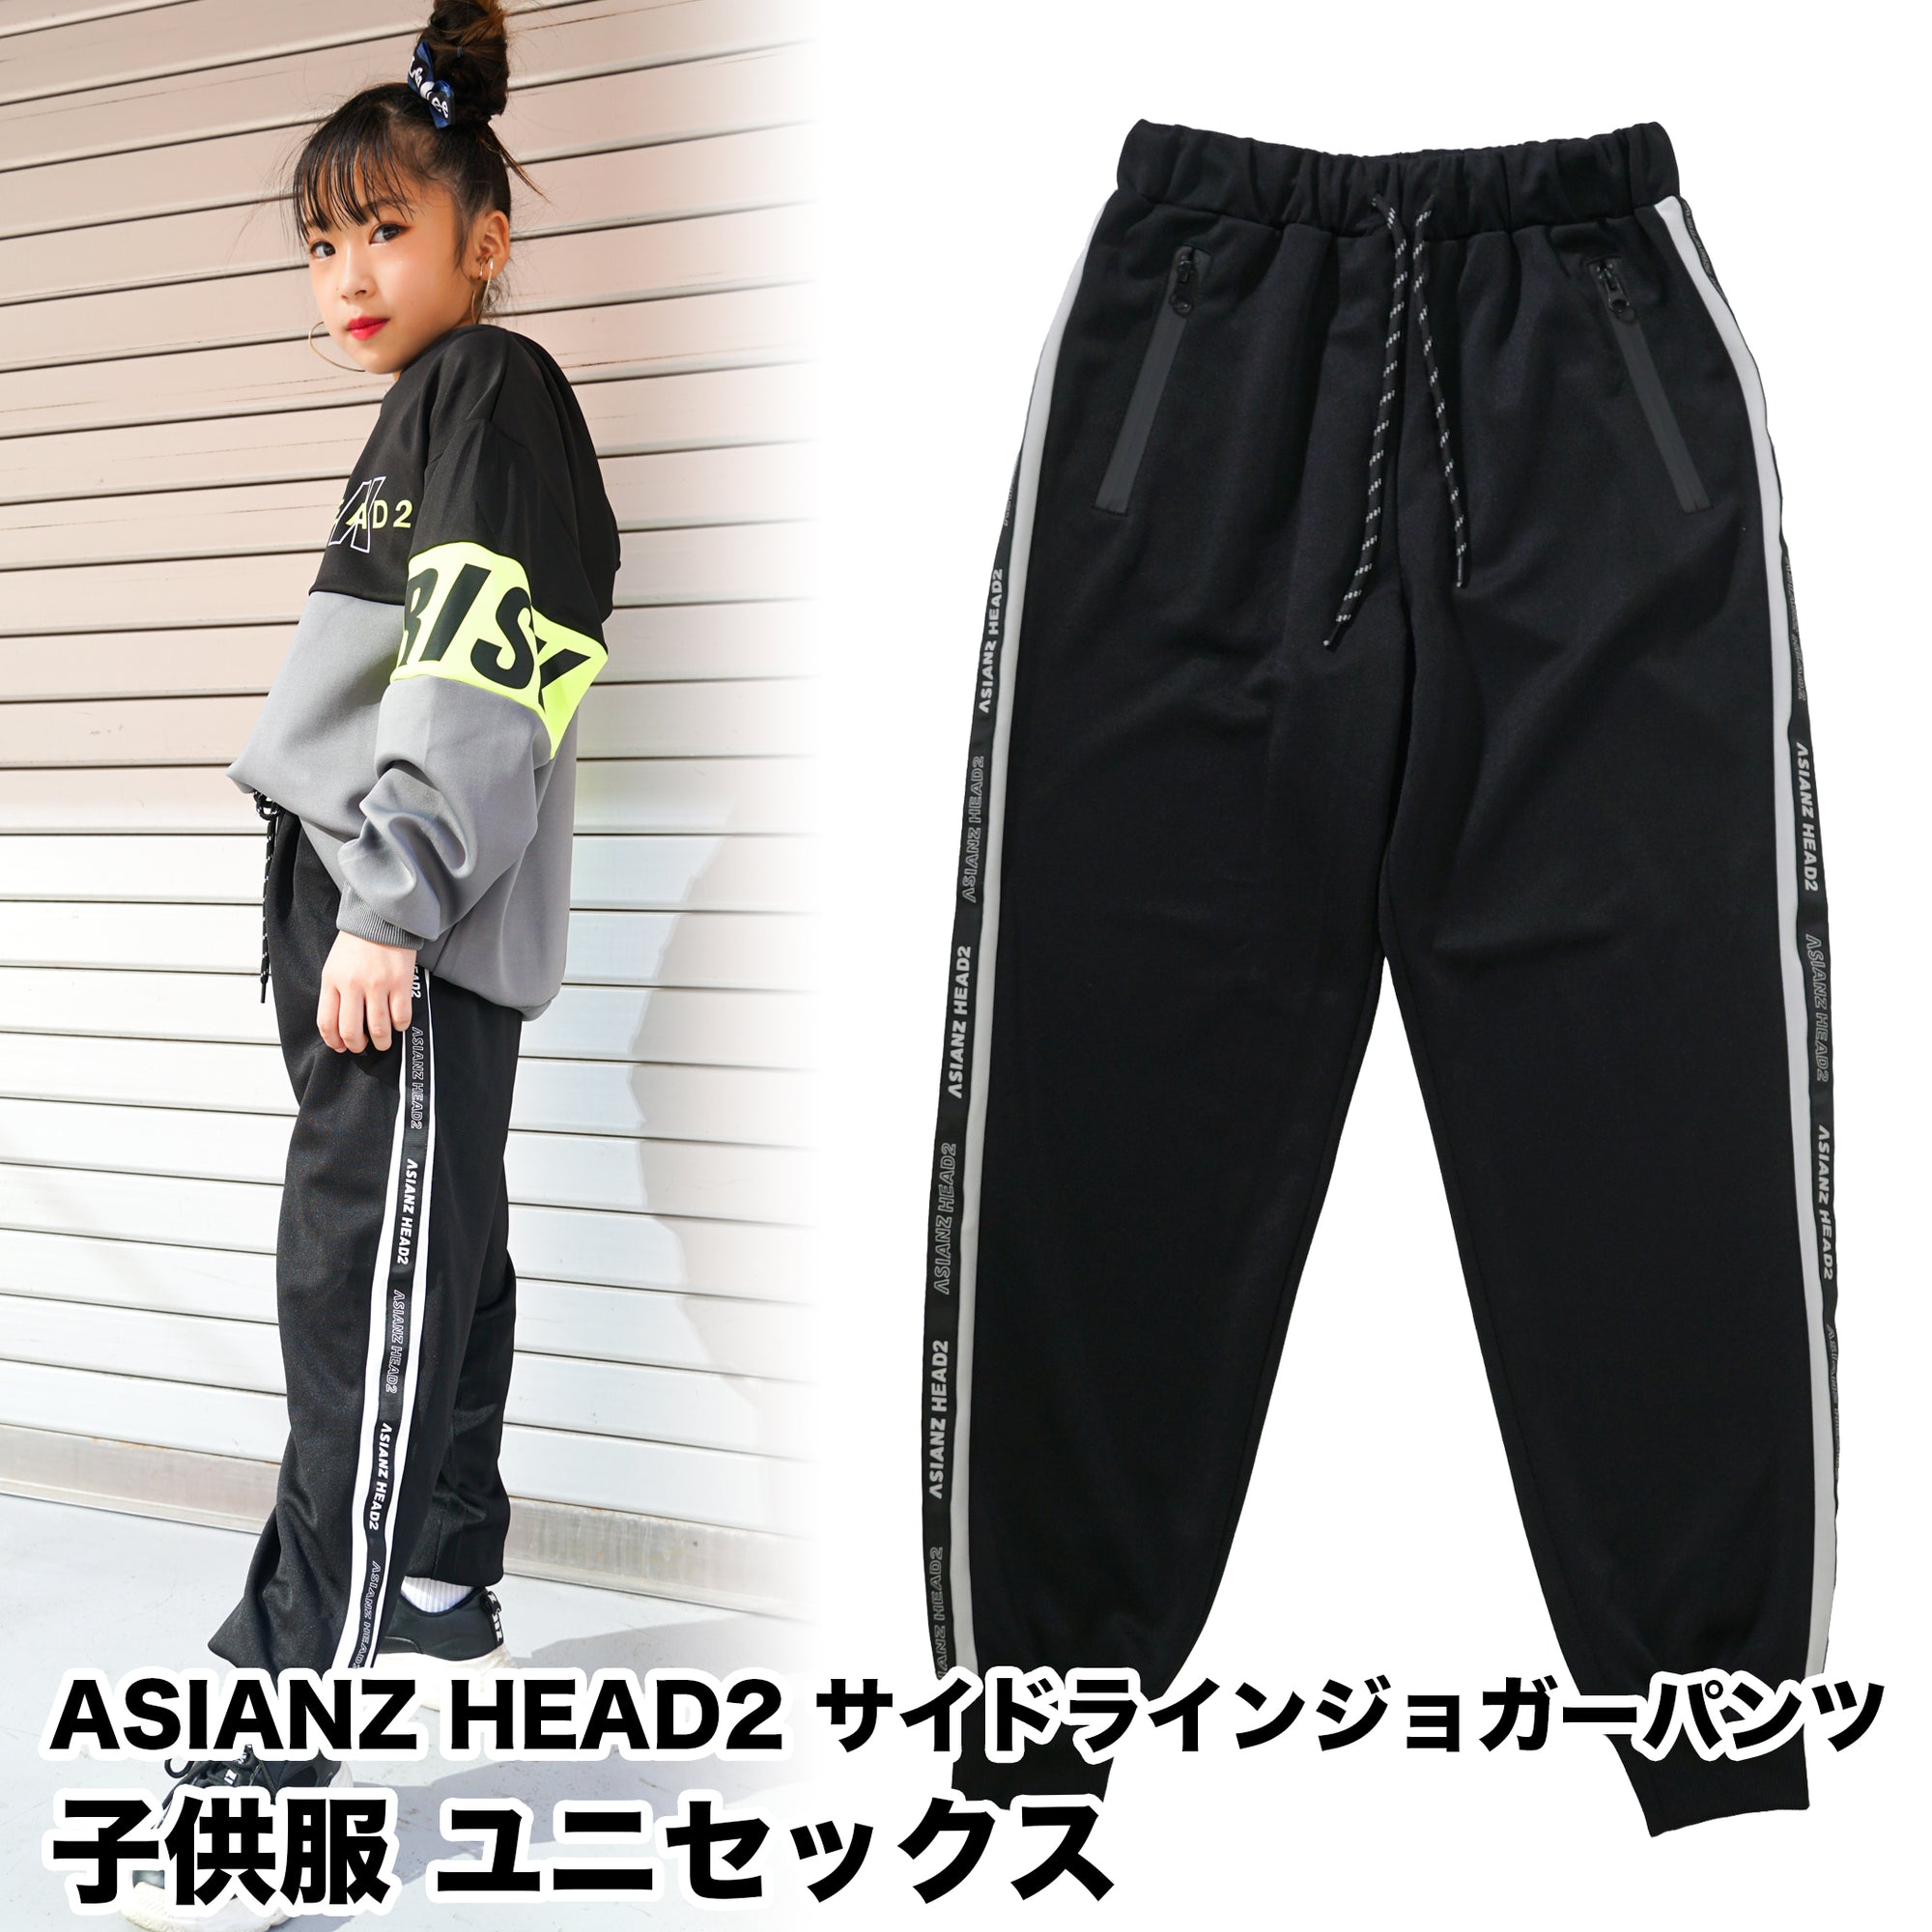 (40%オフ! セール商品) ASIANZ HEAD2 サイドラインジョガーパンツ